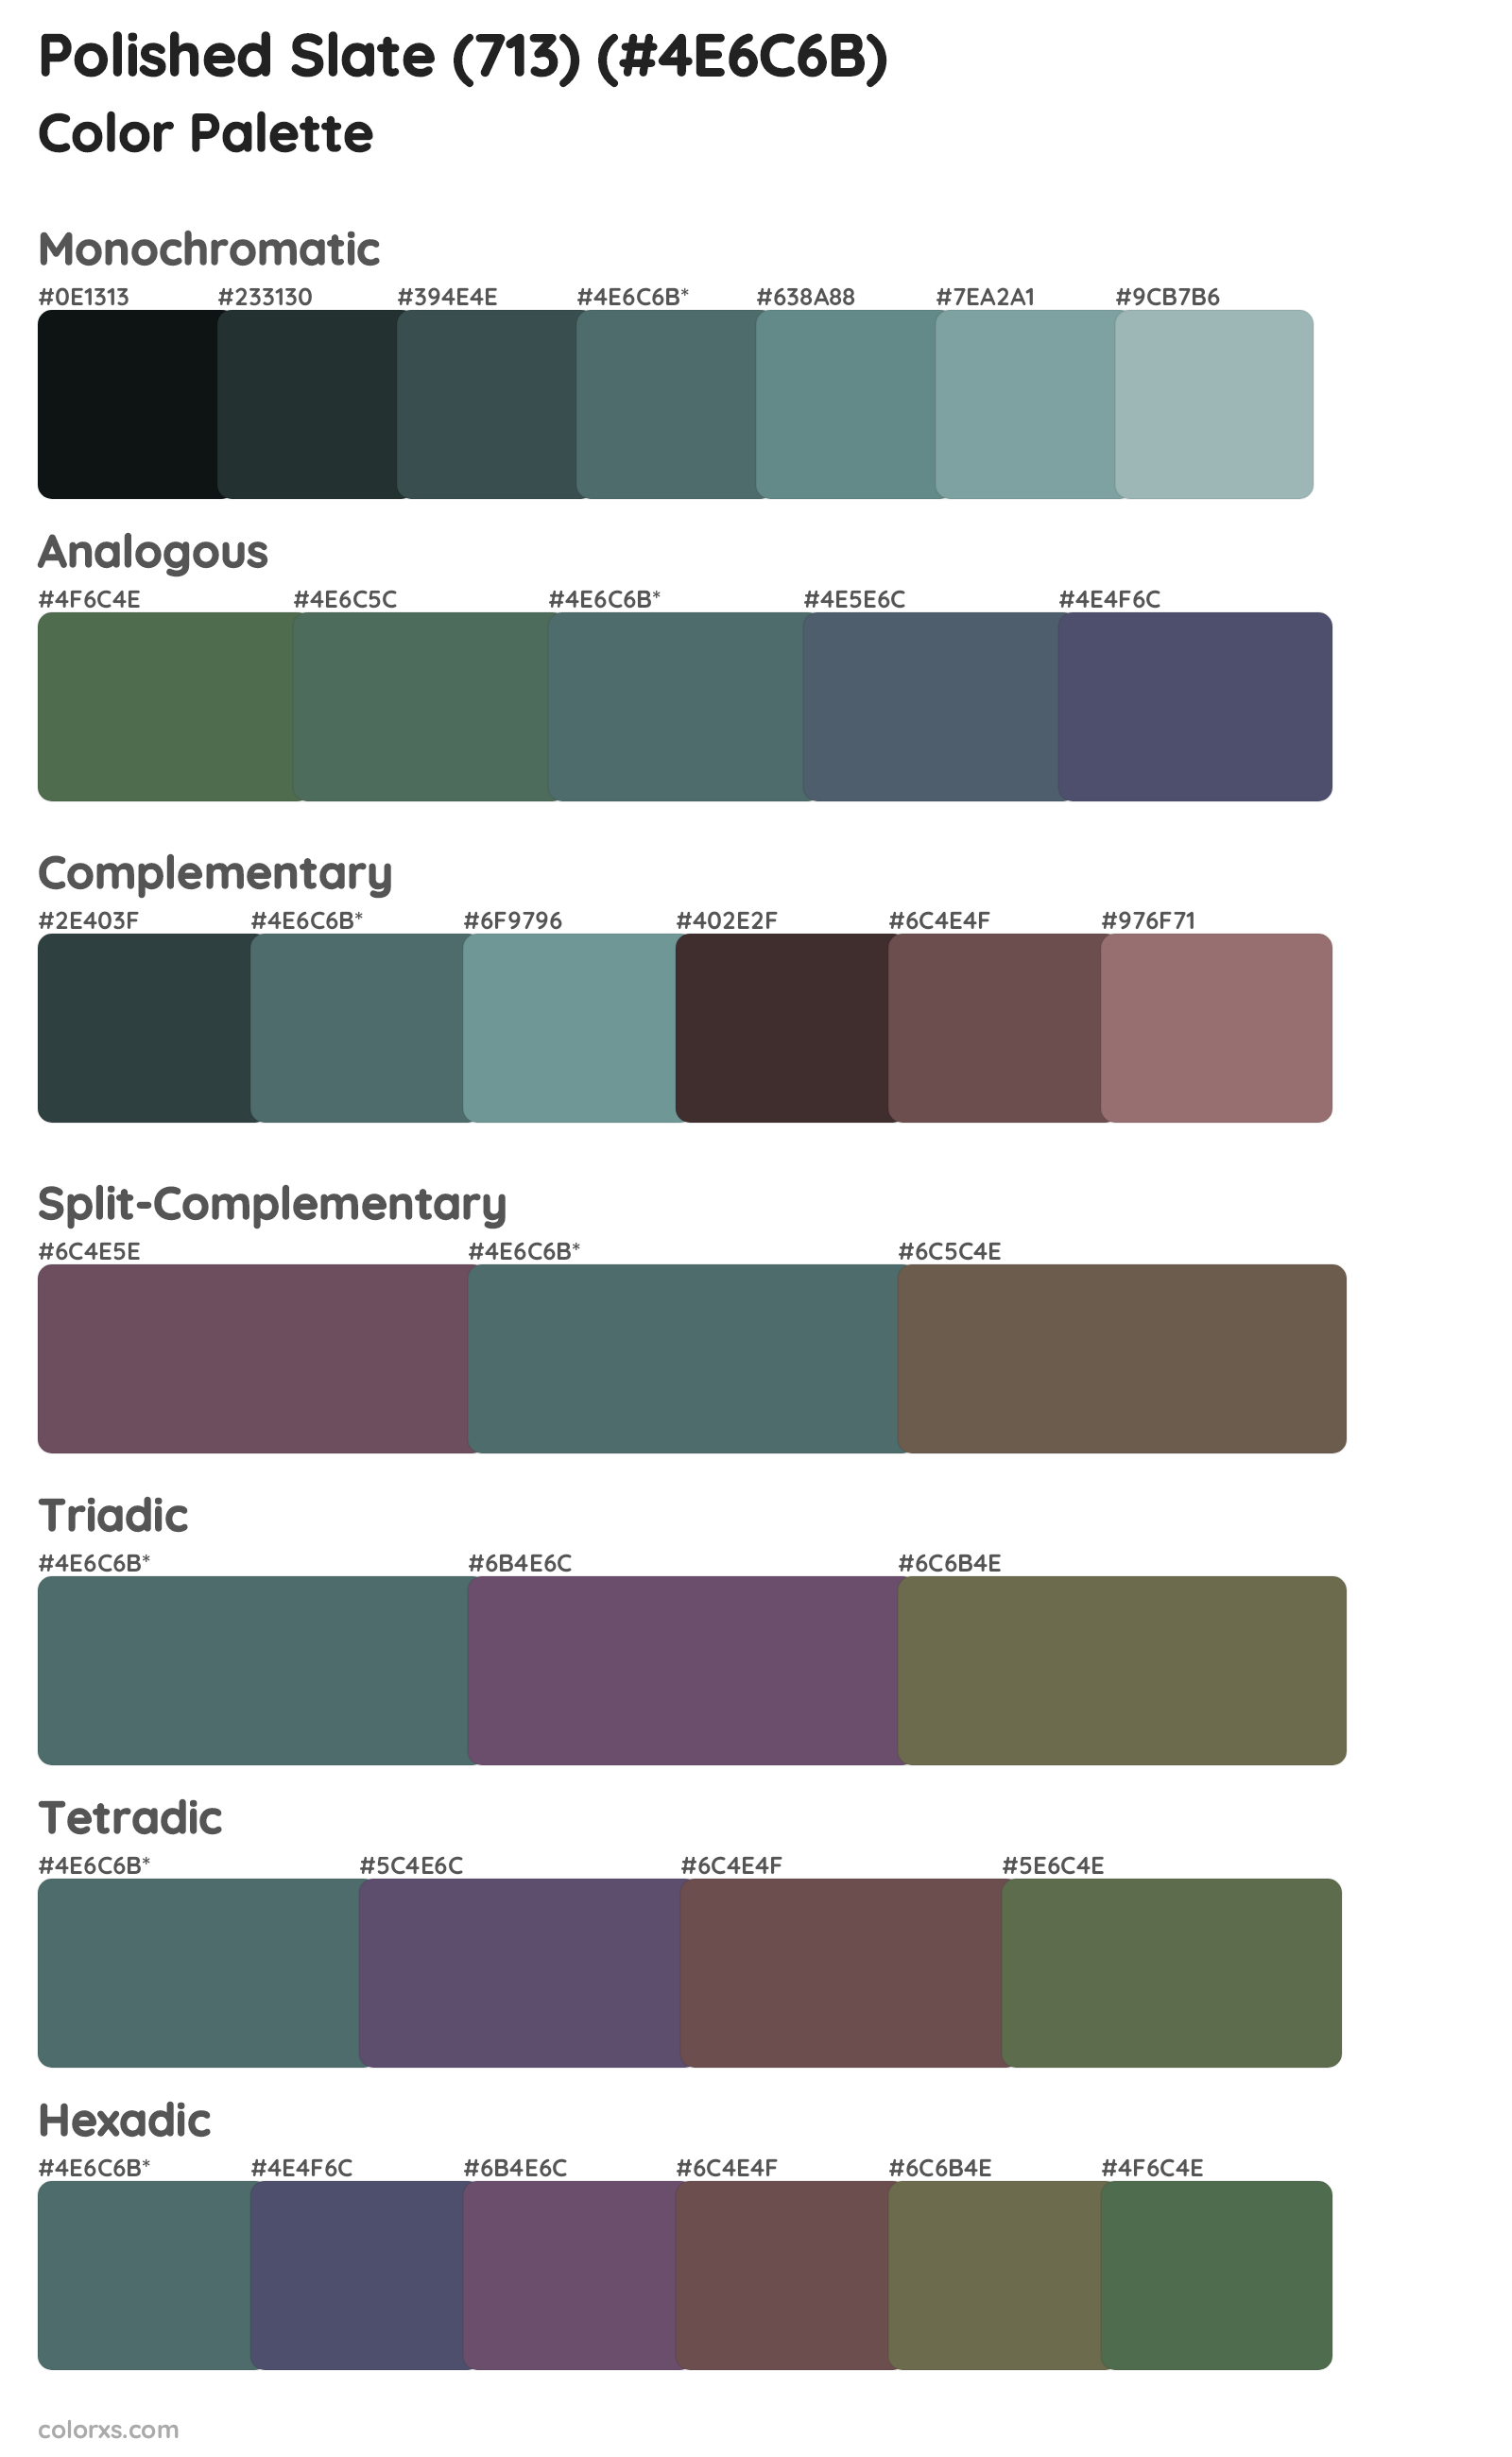 Polished Slate (713) Color Scheme Palettes